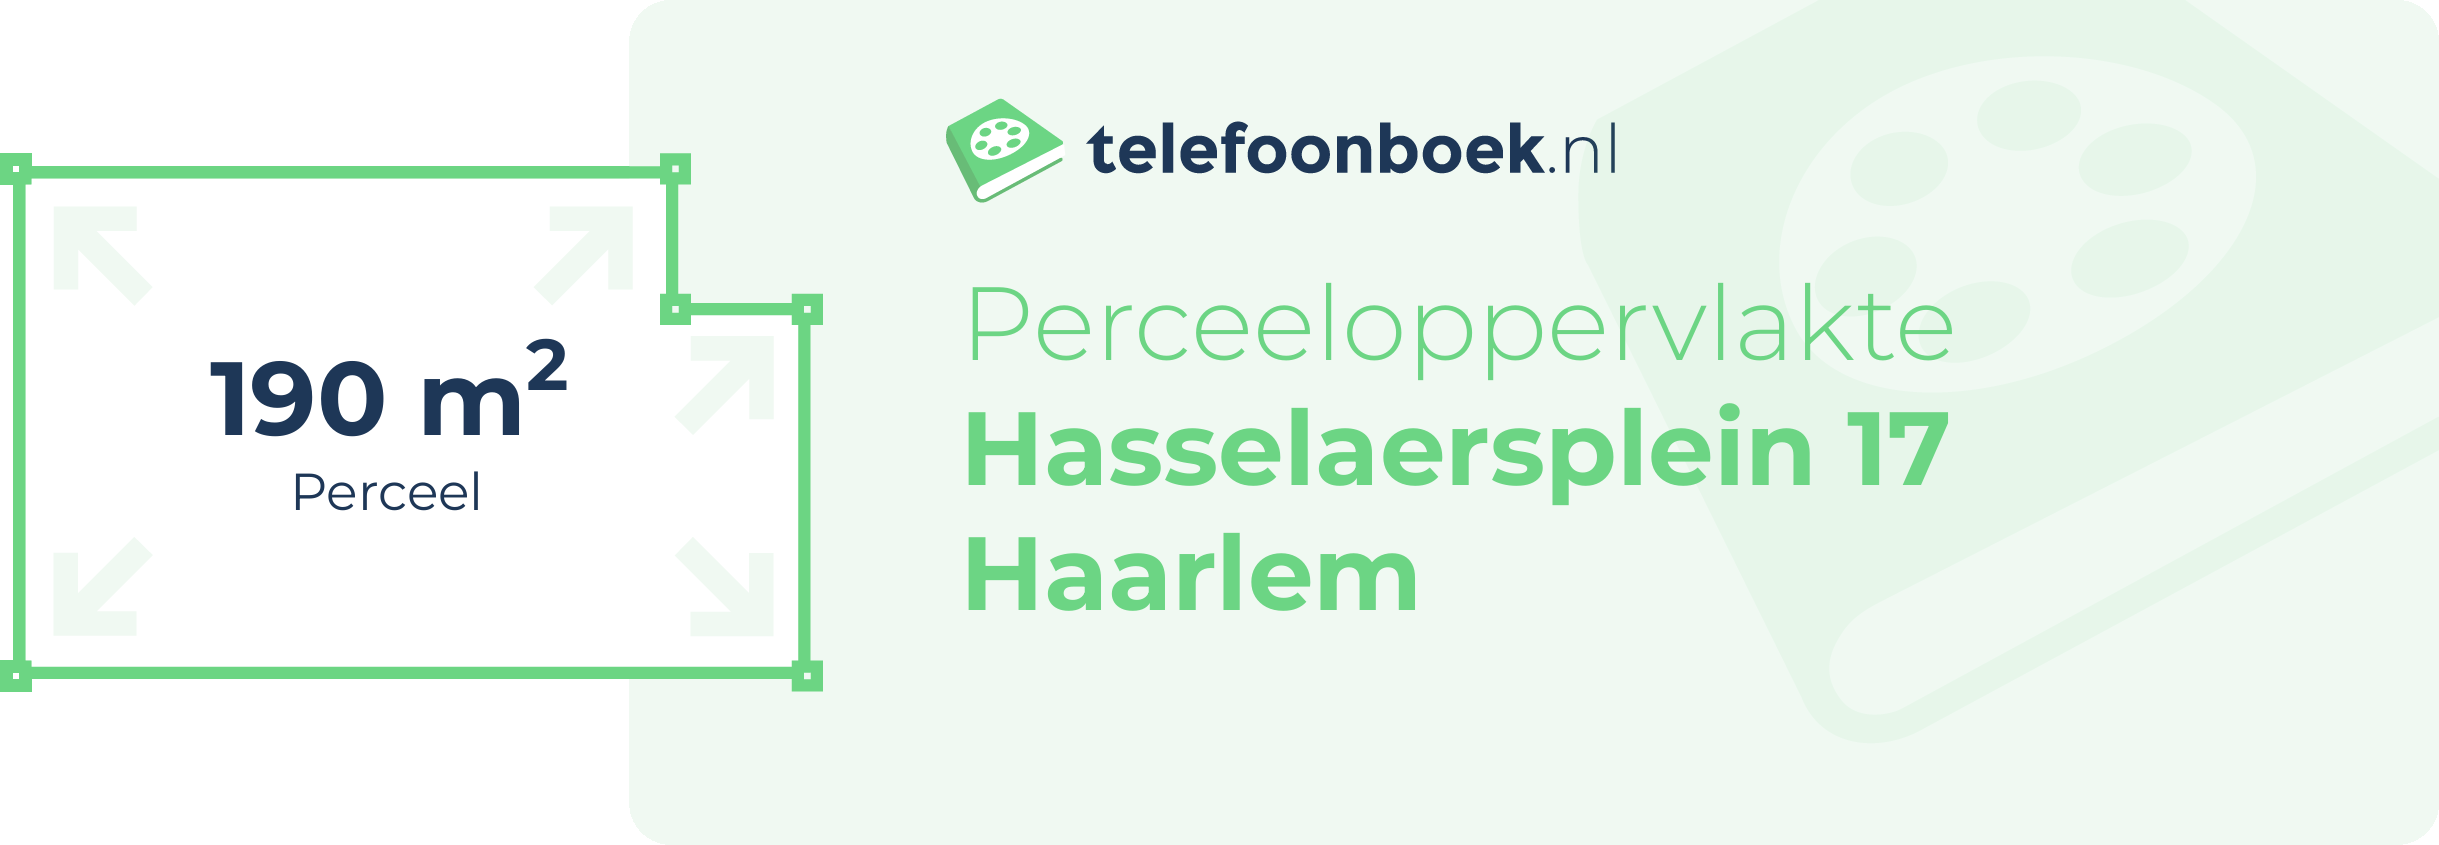 Perceeloppervlakte Hasselaersplein 17 Haarlem